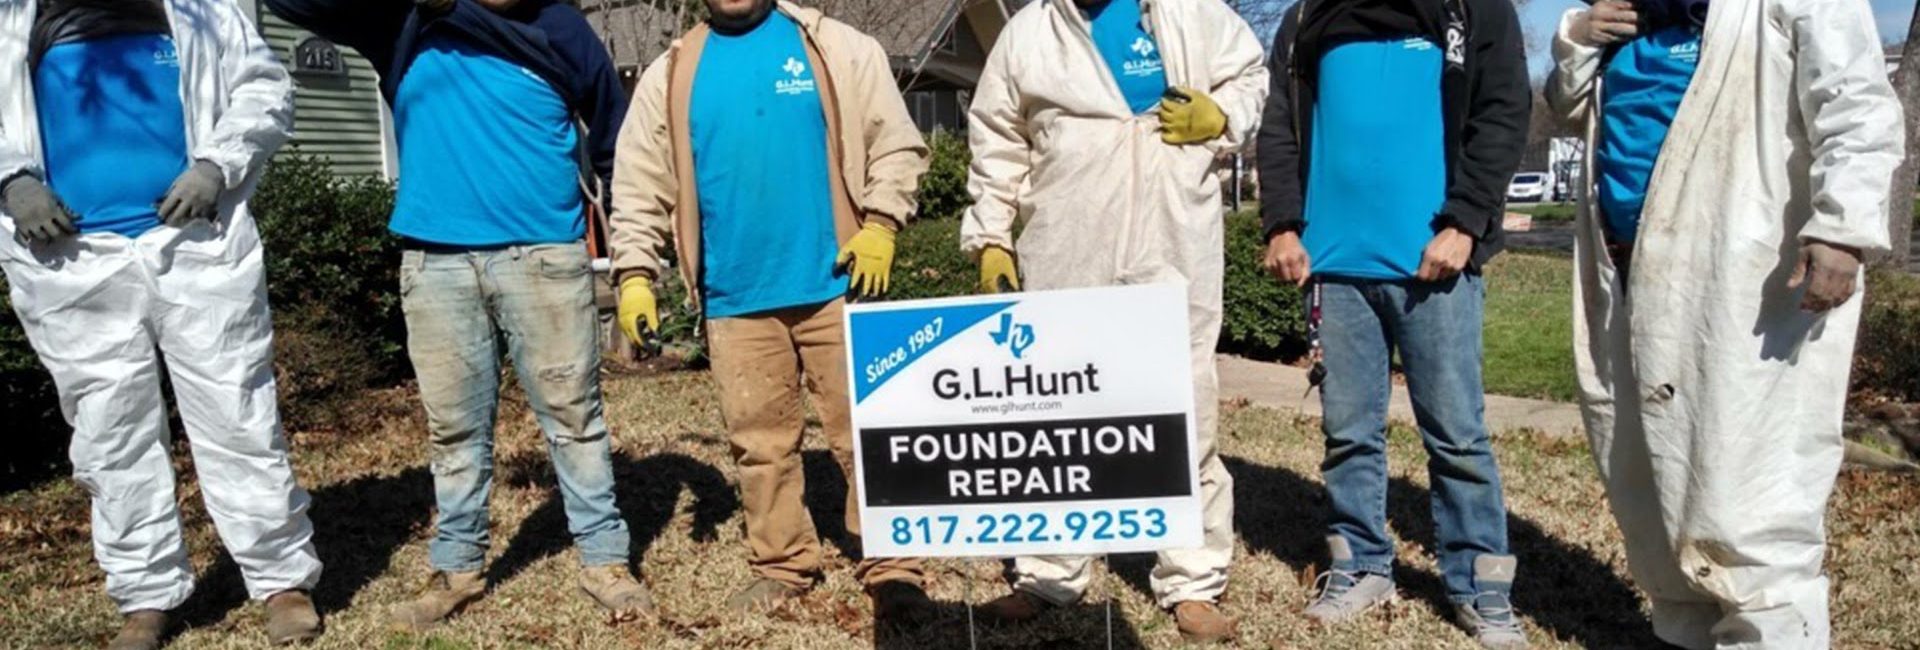 G.L. Hunt Foundation Repair 6